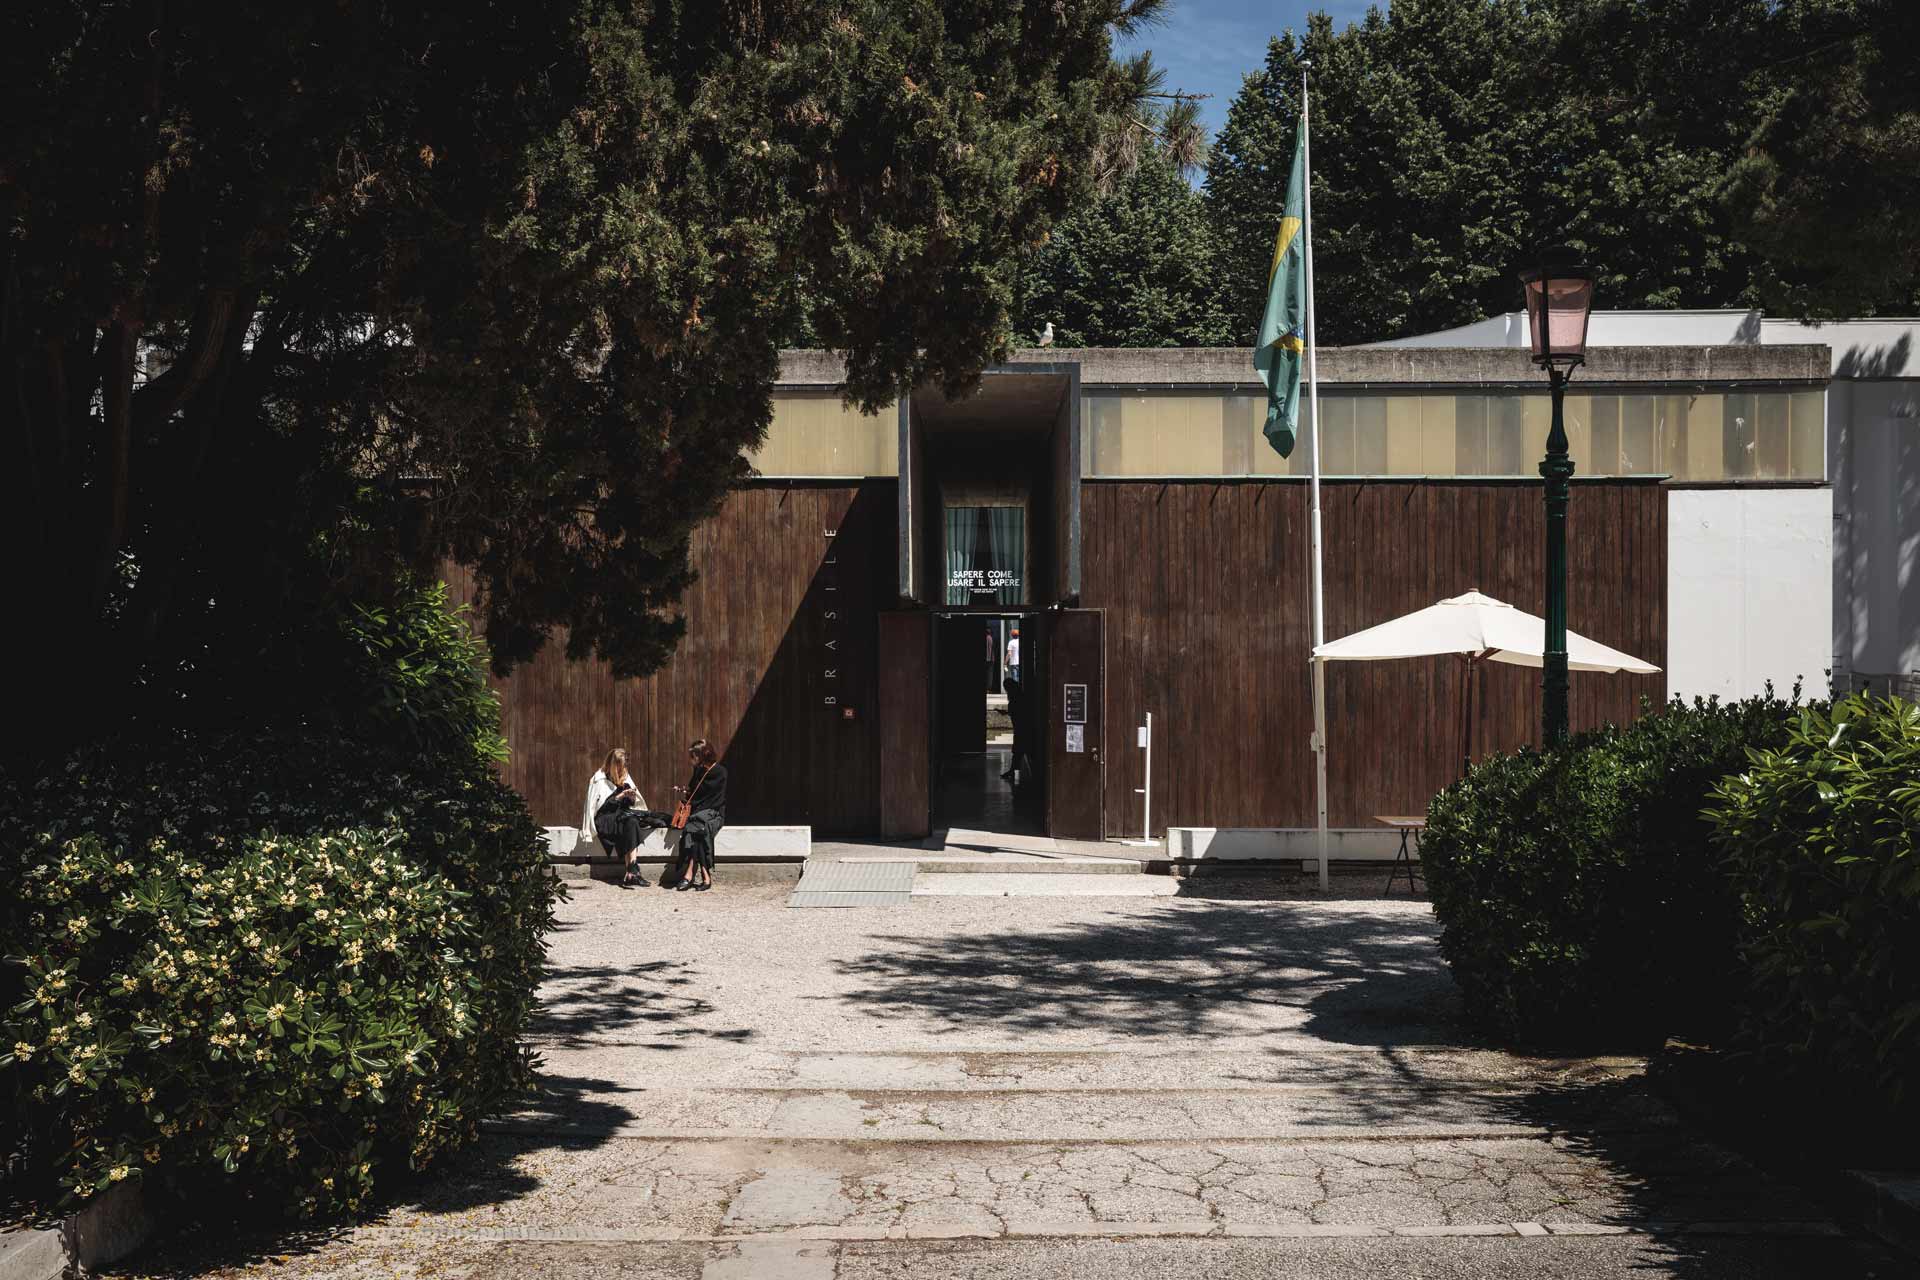 Venice-Biennale-Architecture-Brazil-Pavilion-front